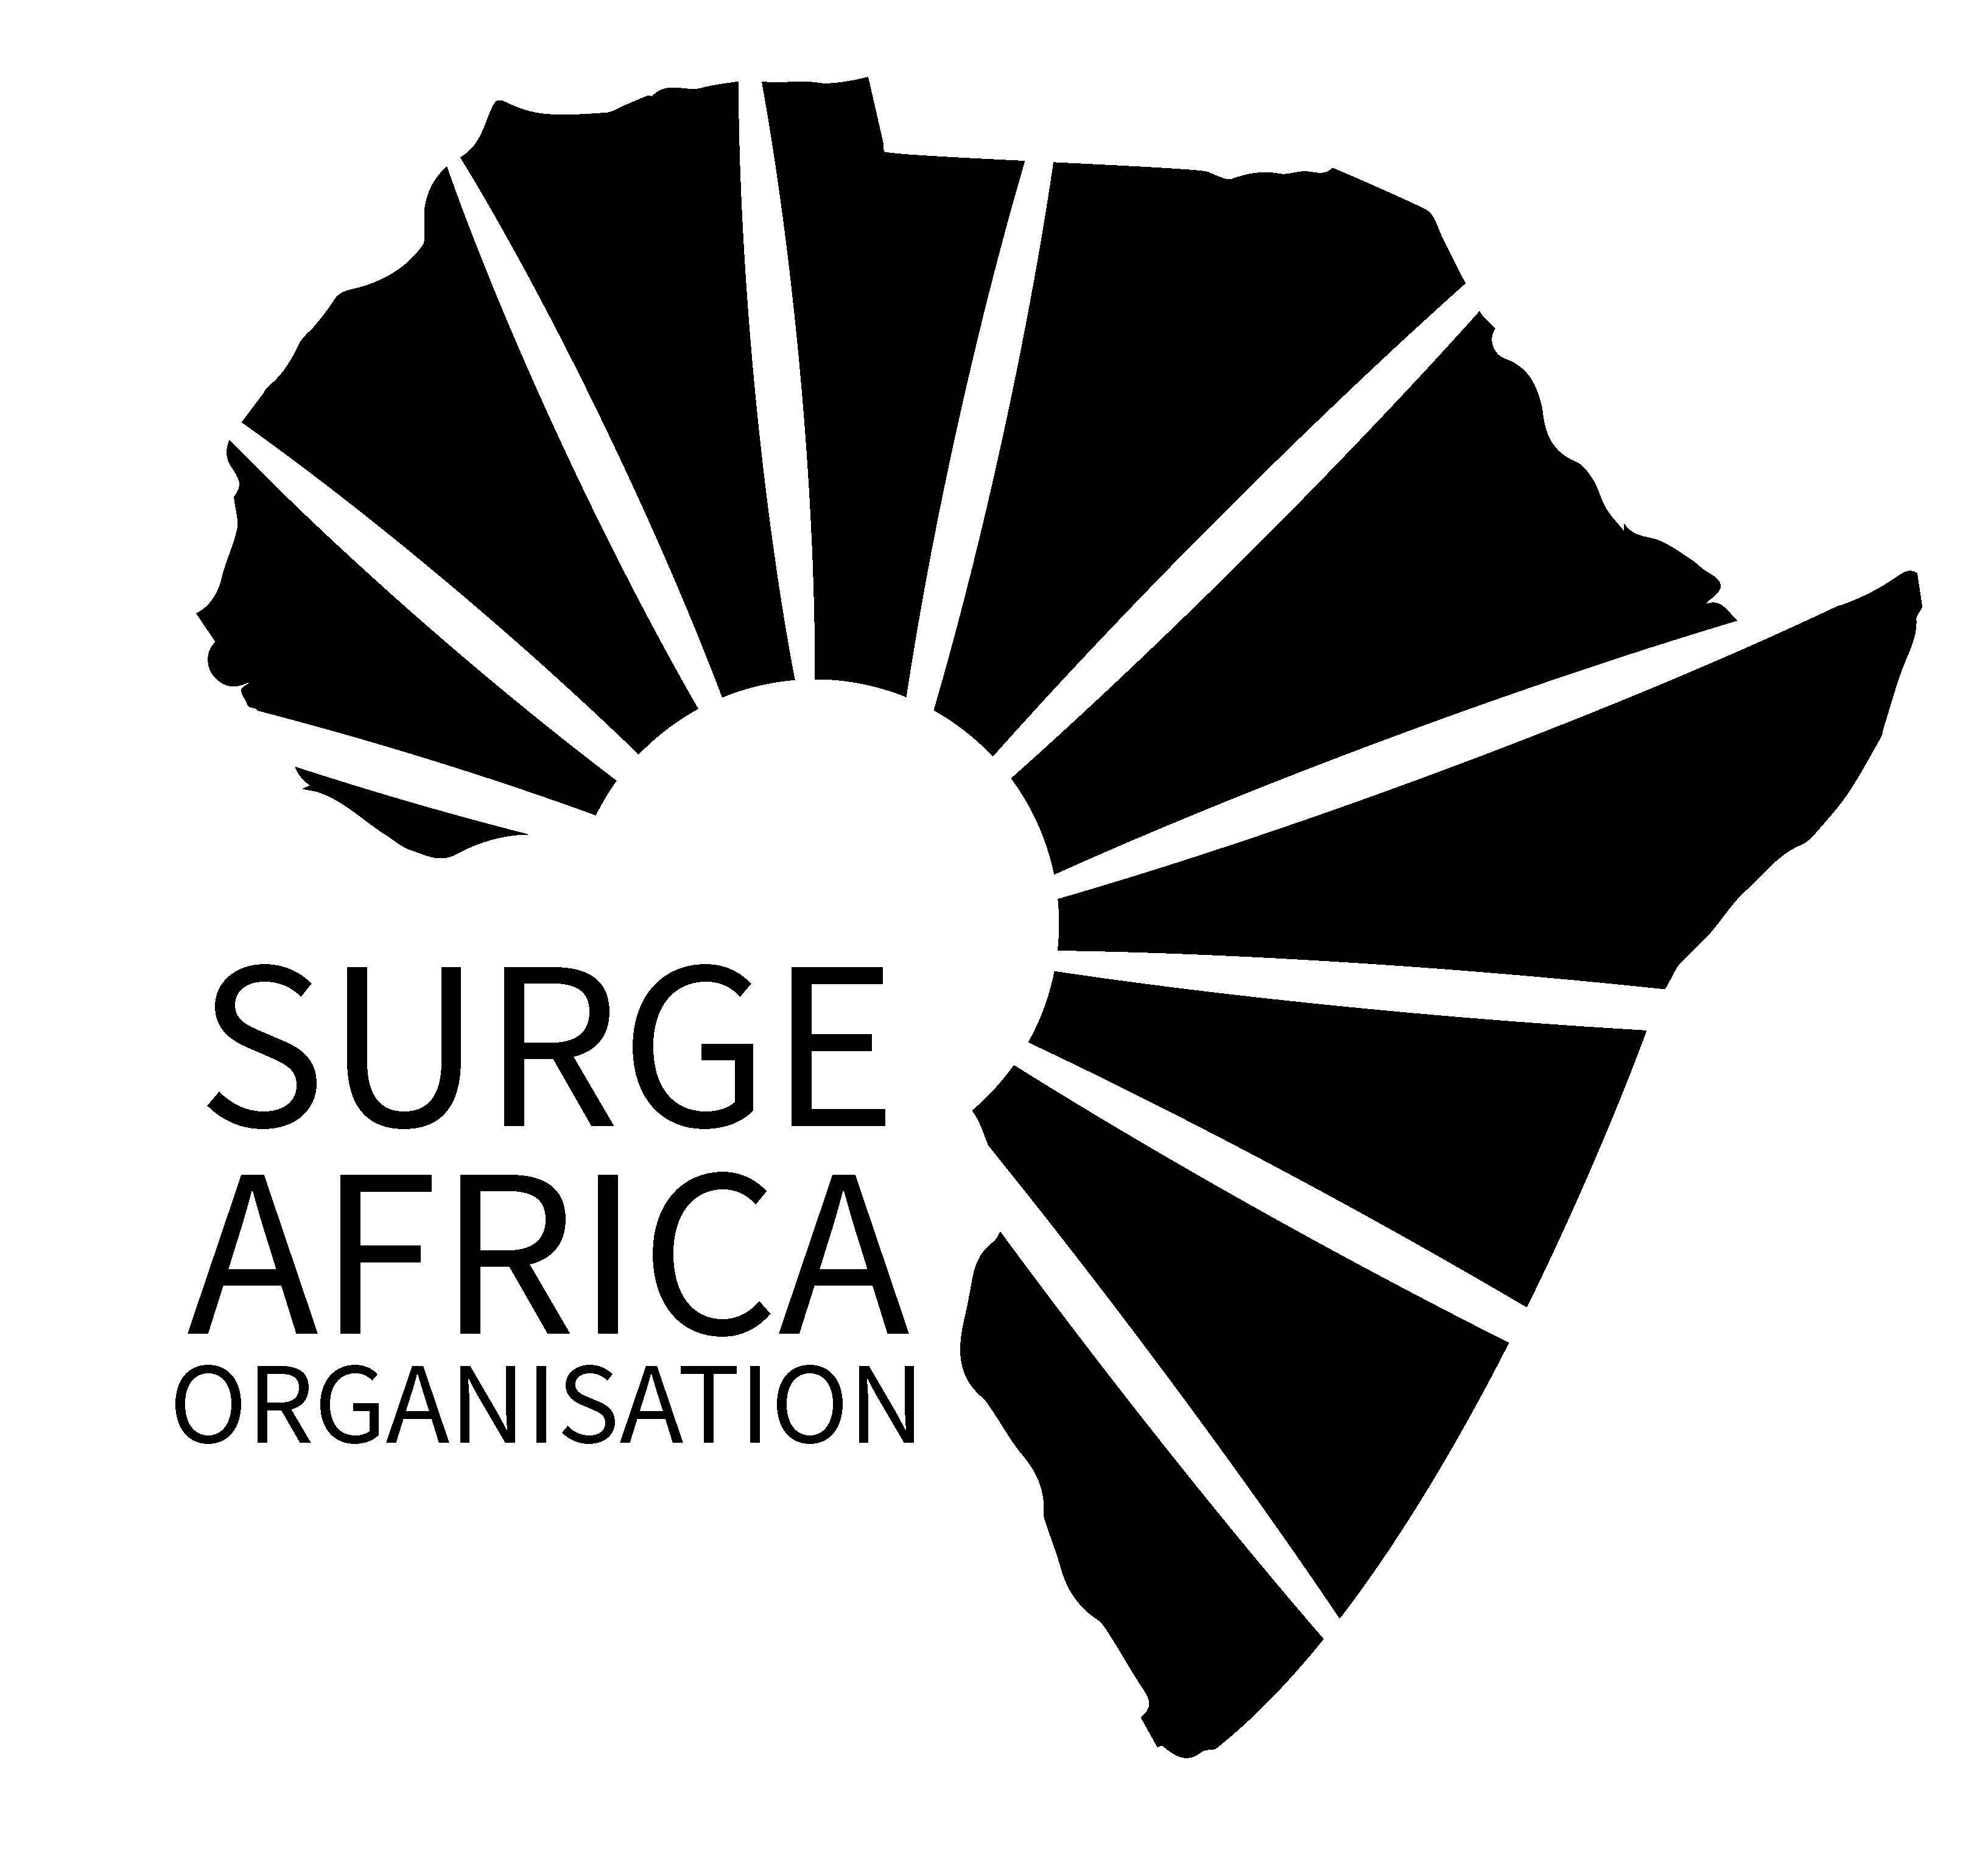 Surge Africa